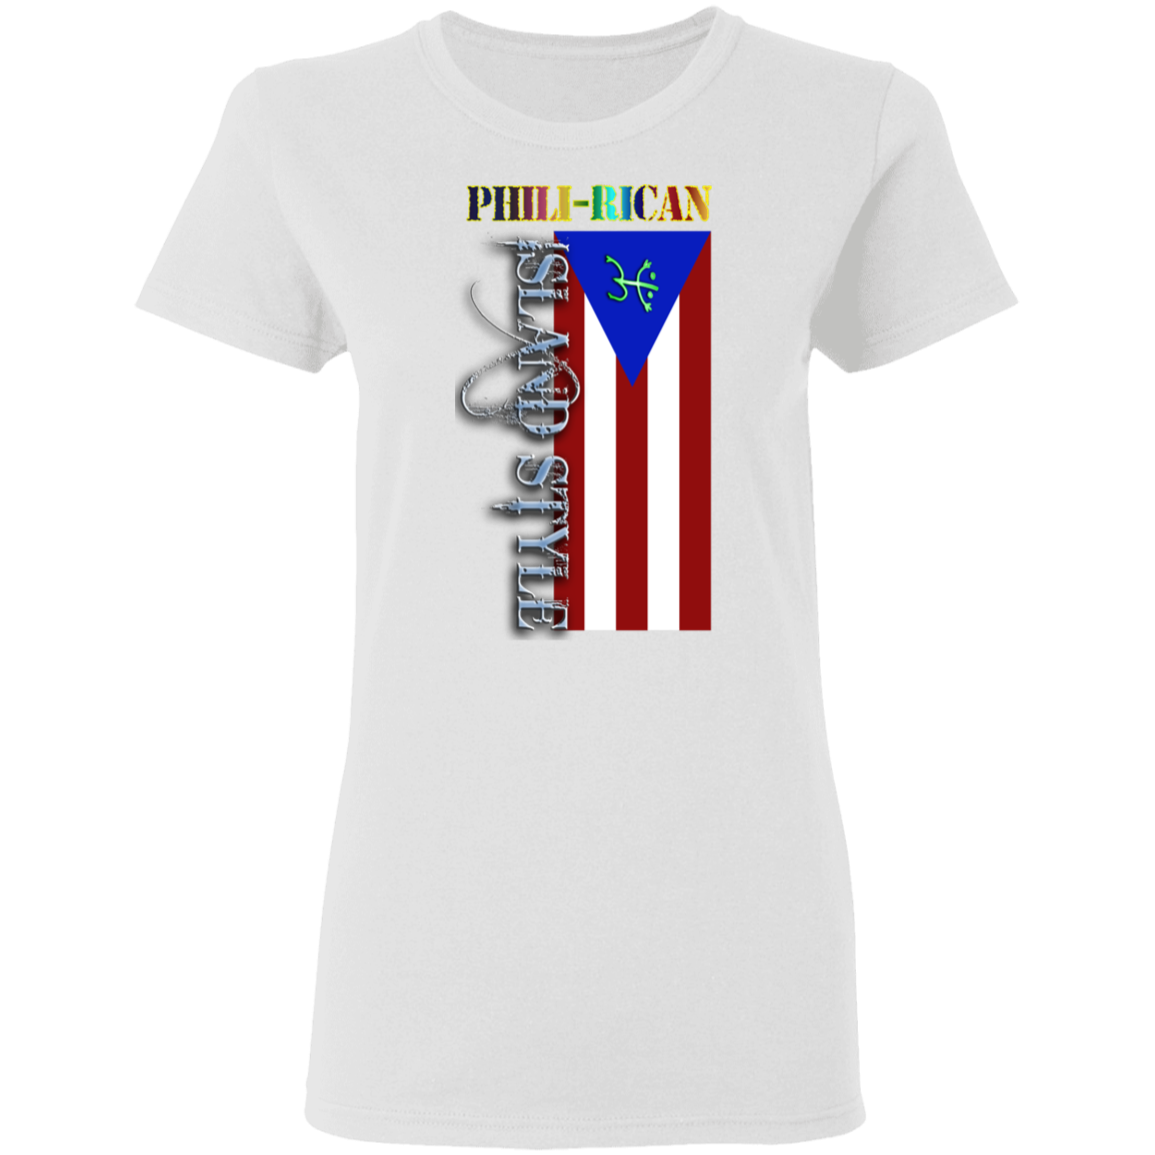 Phili-Rican Ladies' 5.3 oz. T-Shirt